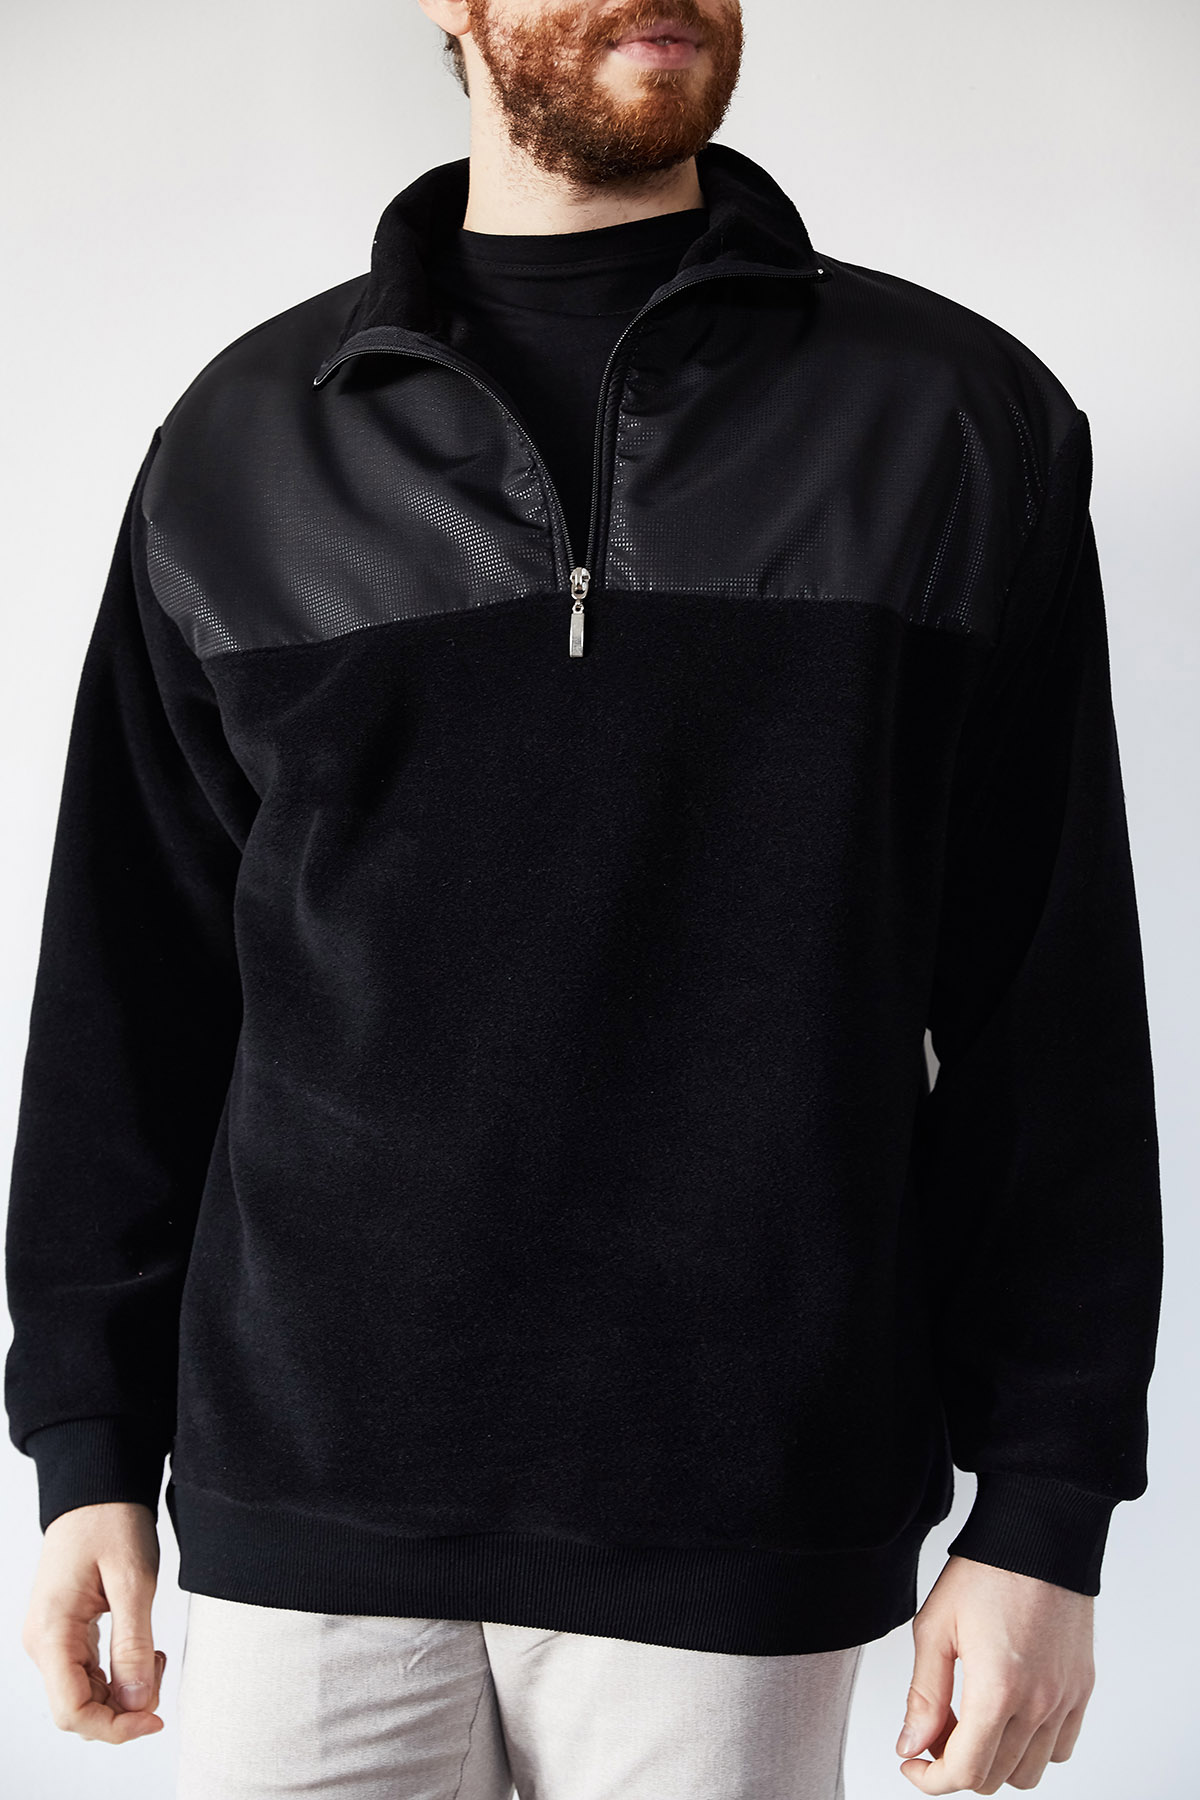 Siyah Deri Garnili Polar Sweatshirt 1KXE8-44233-02 